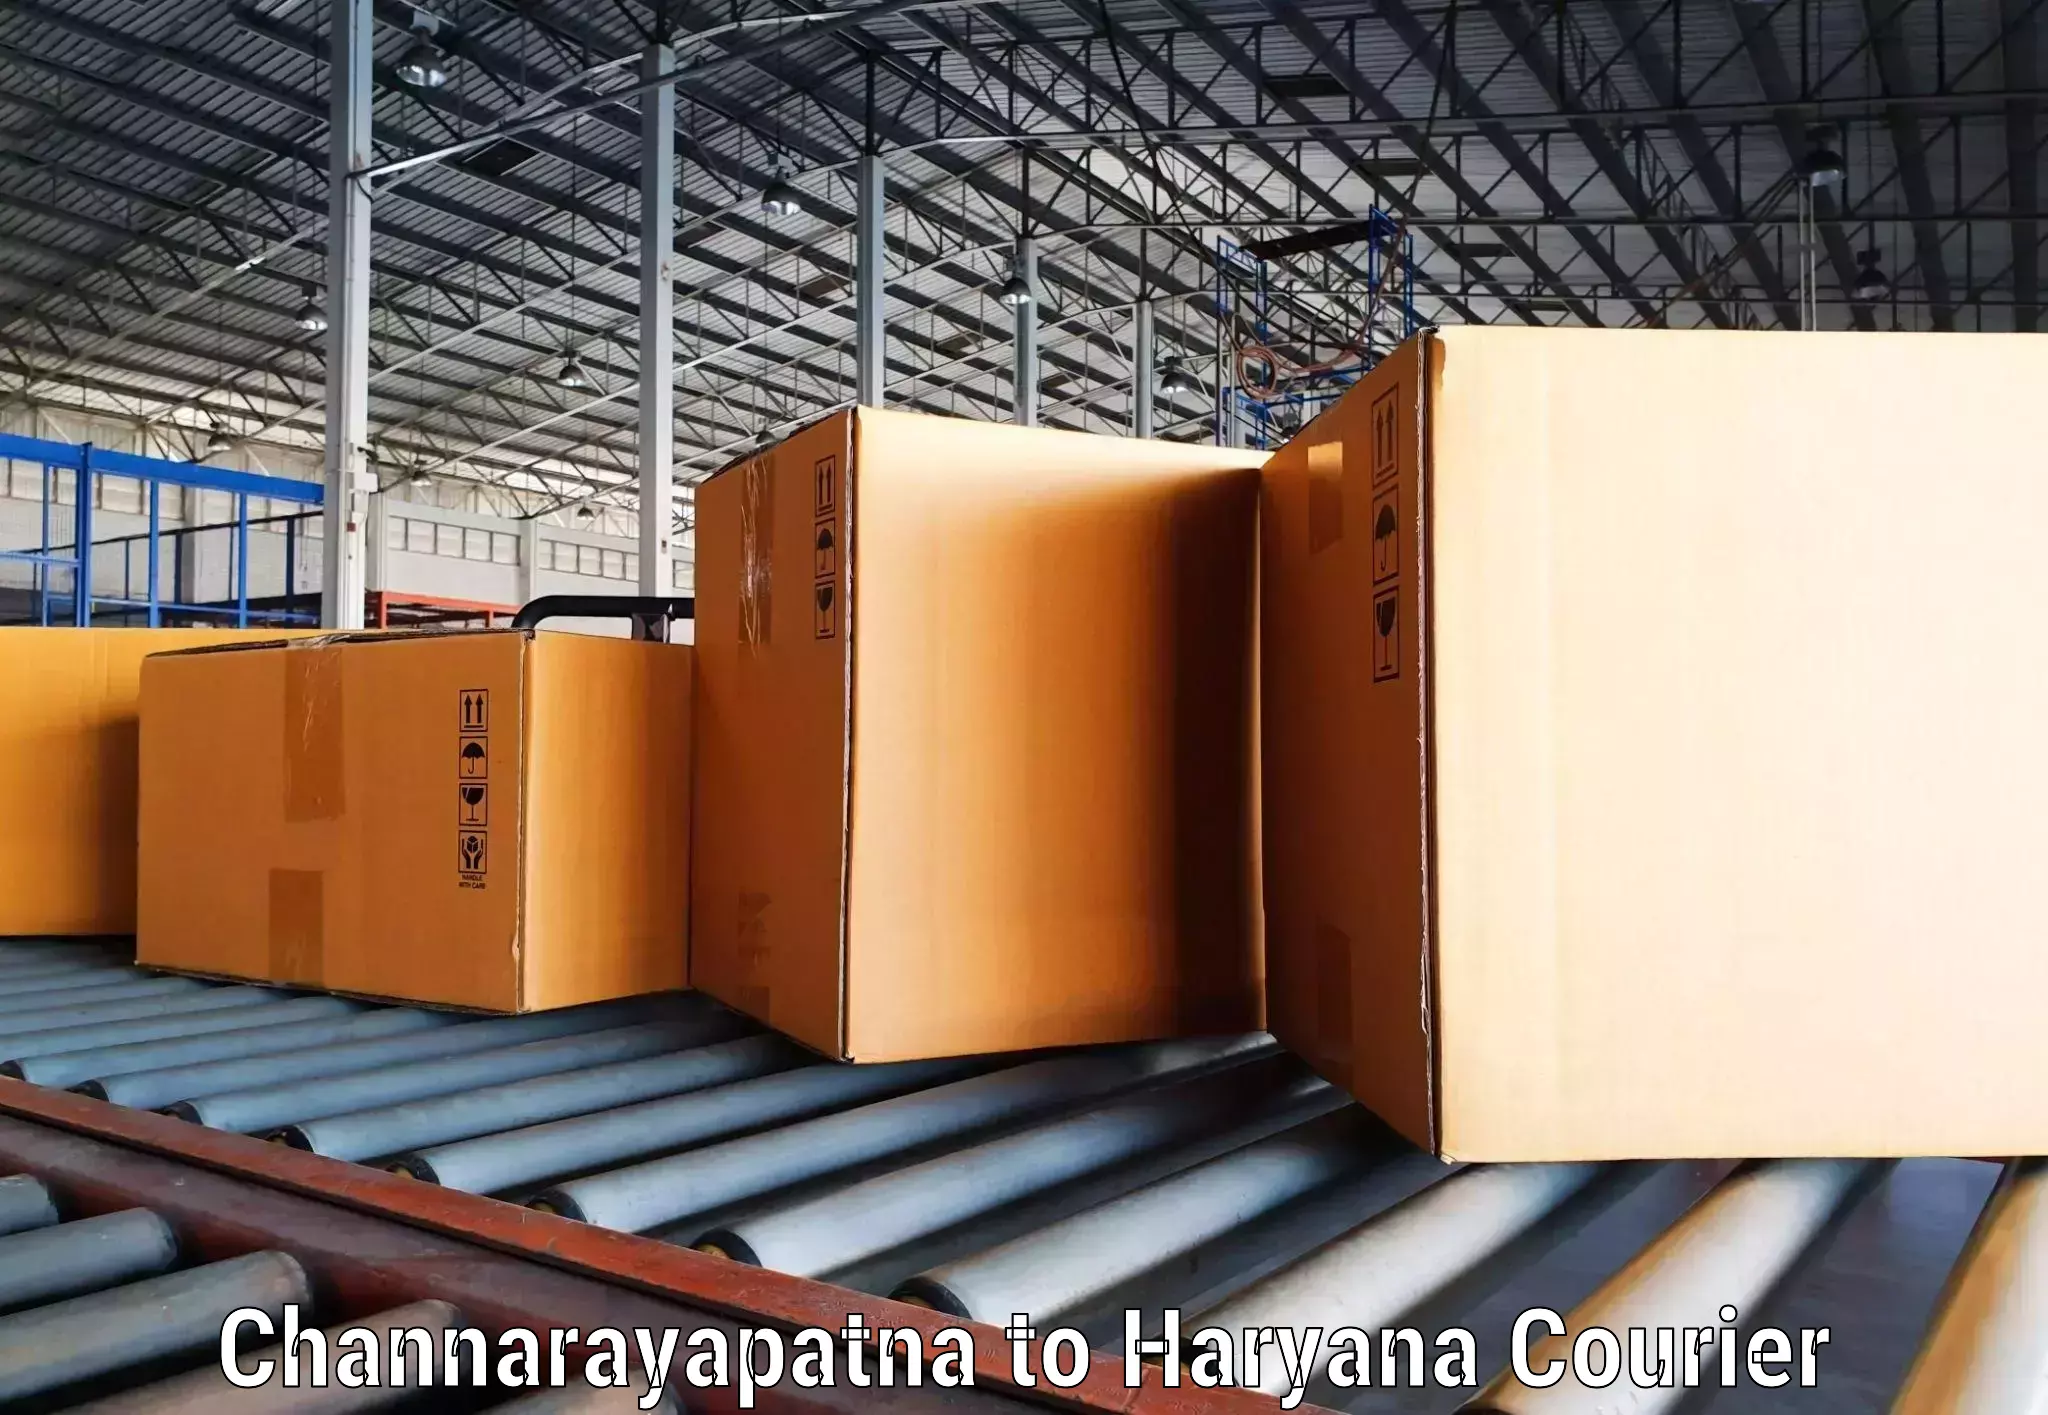 Modern delivery methods Channarayapatna to Siwani